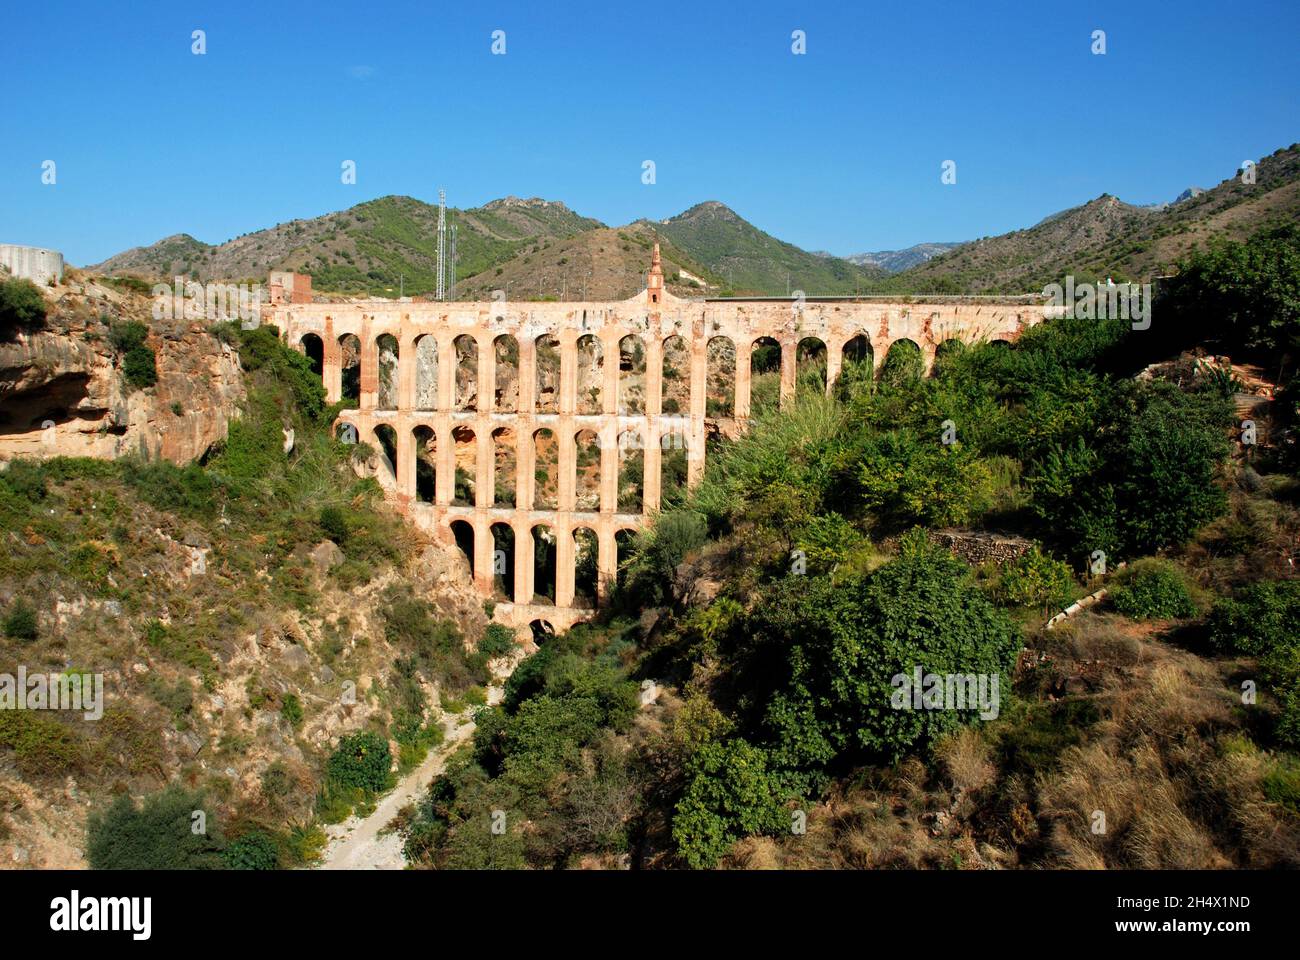 Vue sur l'aqueduc d'Aguila construit en 1880, Nerja, province de Malaga, Andalousie, Espagne,Europe Banque D'Images